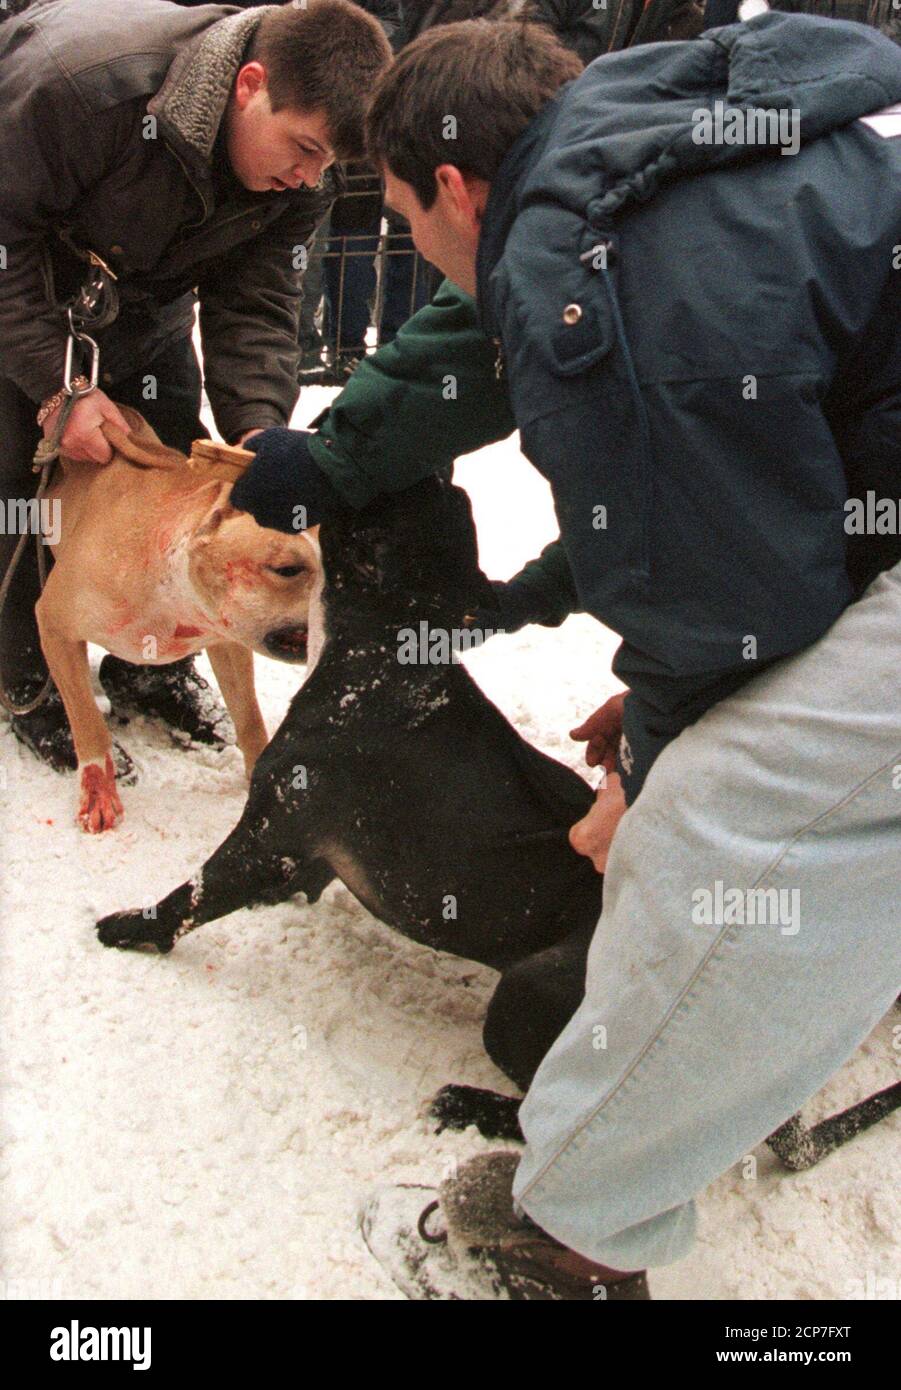 Gli spettatori guardano una lotta cane con scommesse in contanti a Mosca, 19 febbraio 1997. La Russia post-sovietica importò la maggior parte dei suoi tori di buca dagli Stati Uniti. A due o tre anni fa, tuttavia, l'importazione di tori di buca ha visto un calo di numero come i proprietari russi hanno portato la propria generazione di cani. Circa 15 vivai pubblicizzano cuccioli sulle pagine di riviste con cani di buona qualità a partire da 5,000 dollari, passando a 8,000 dollari a 15,000 dollari per una migliore classe di cani. REUTERS/Alexander Natruskin Foto Stock